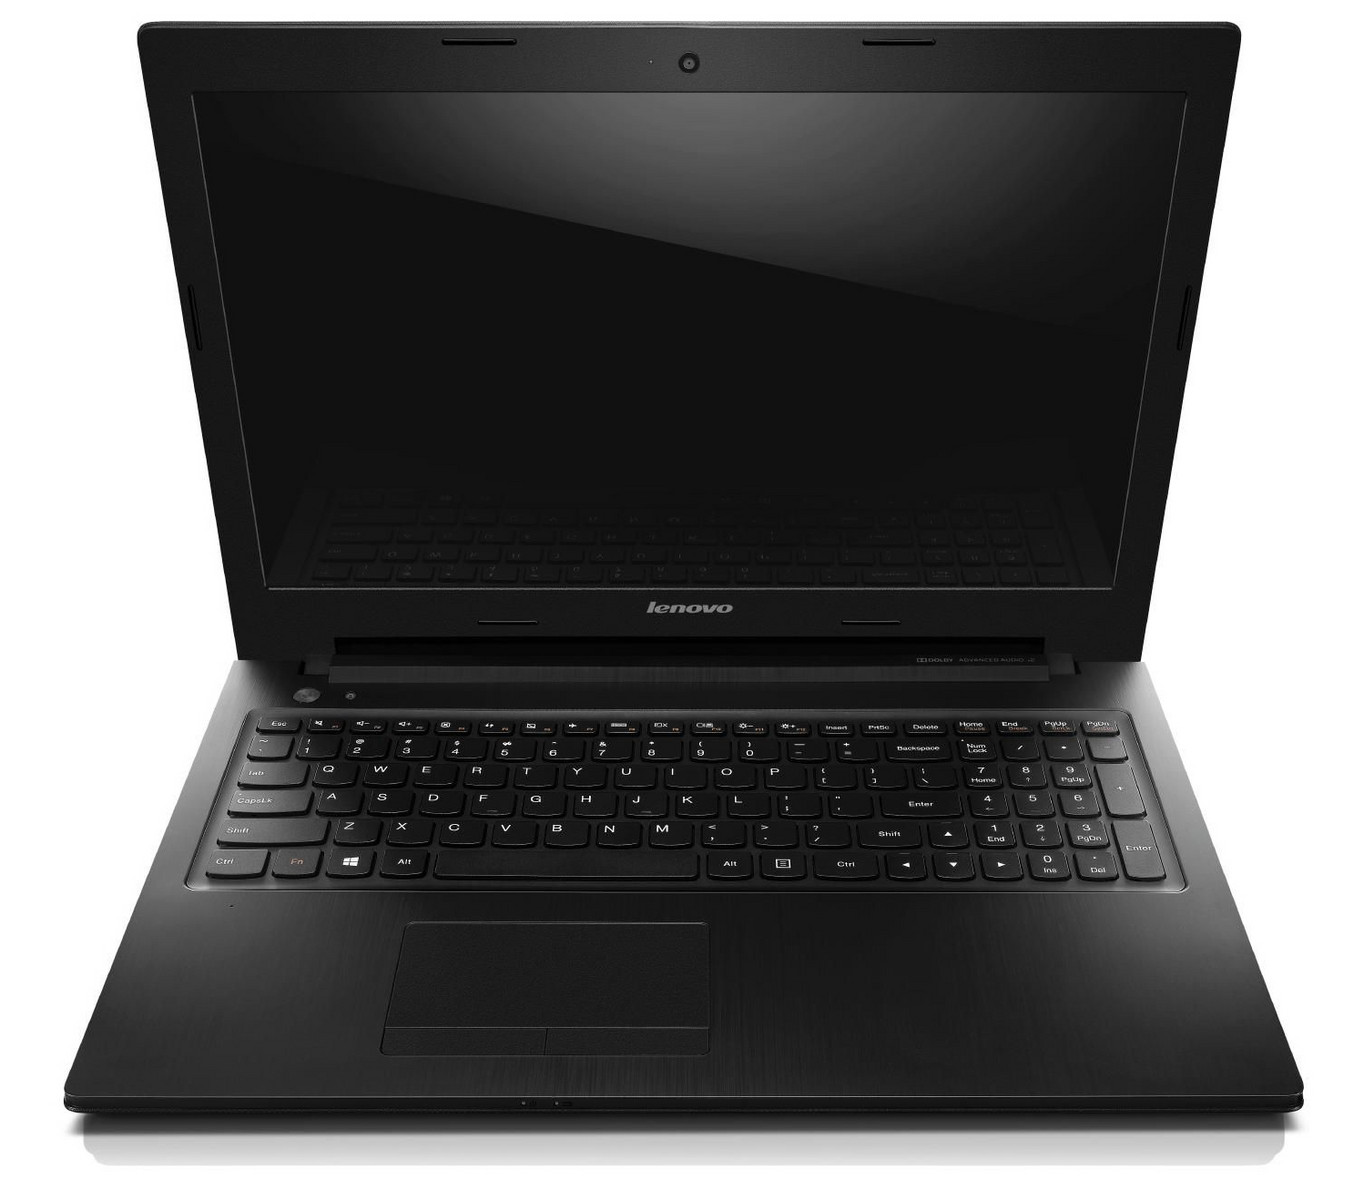 Купить Ноутбук Lenovo G505s